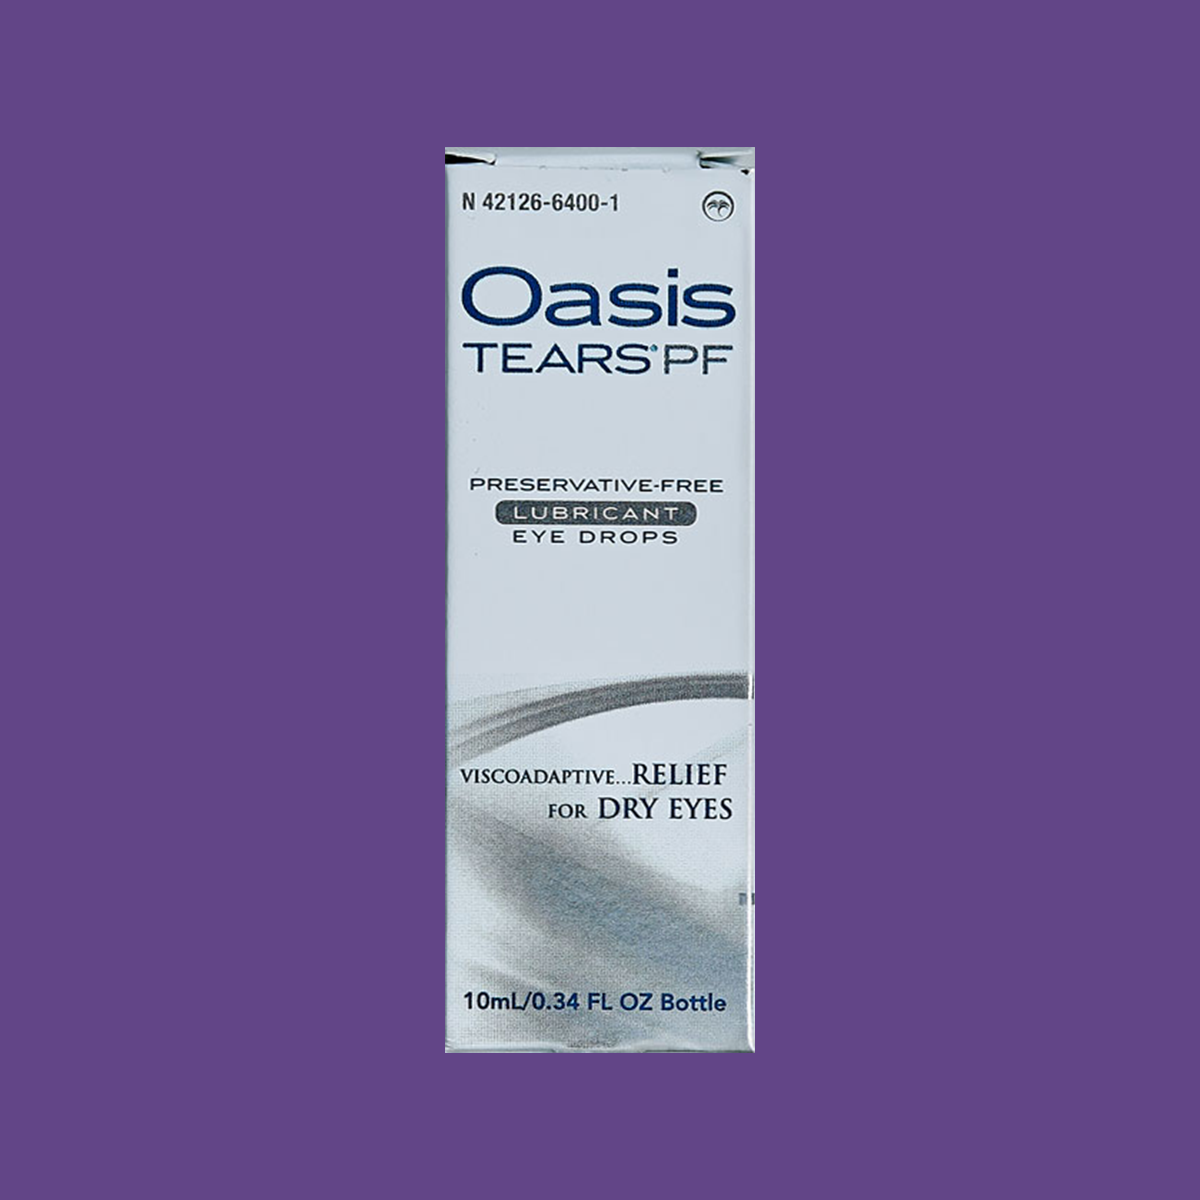 Oasis Tears Preservative-Free Eye Drops (Multi-drop Bottle)